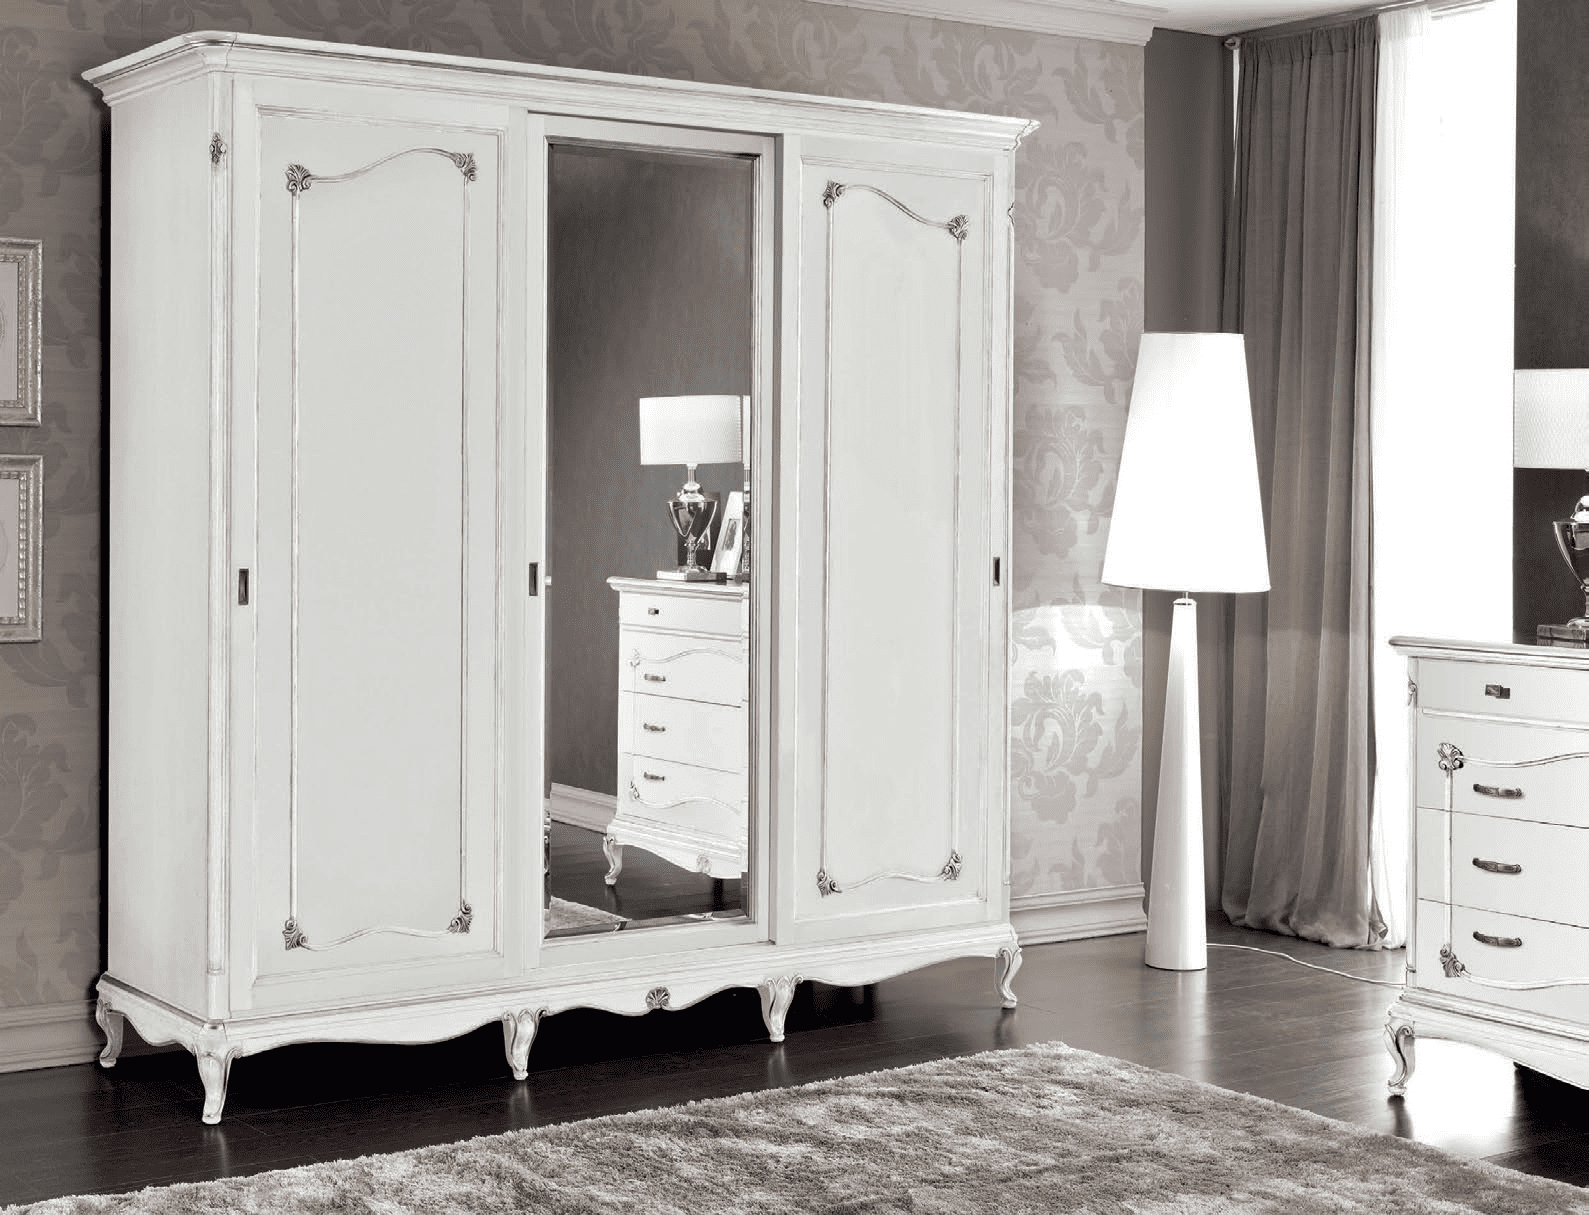 Комплект мебели для спальни из коллекции Art Deco из Италии